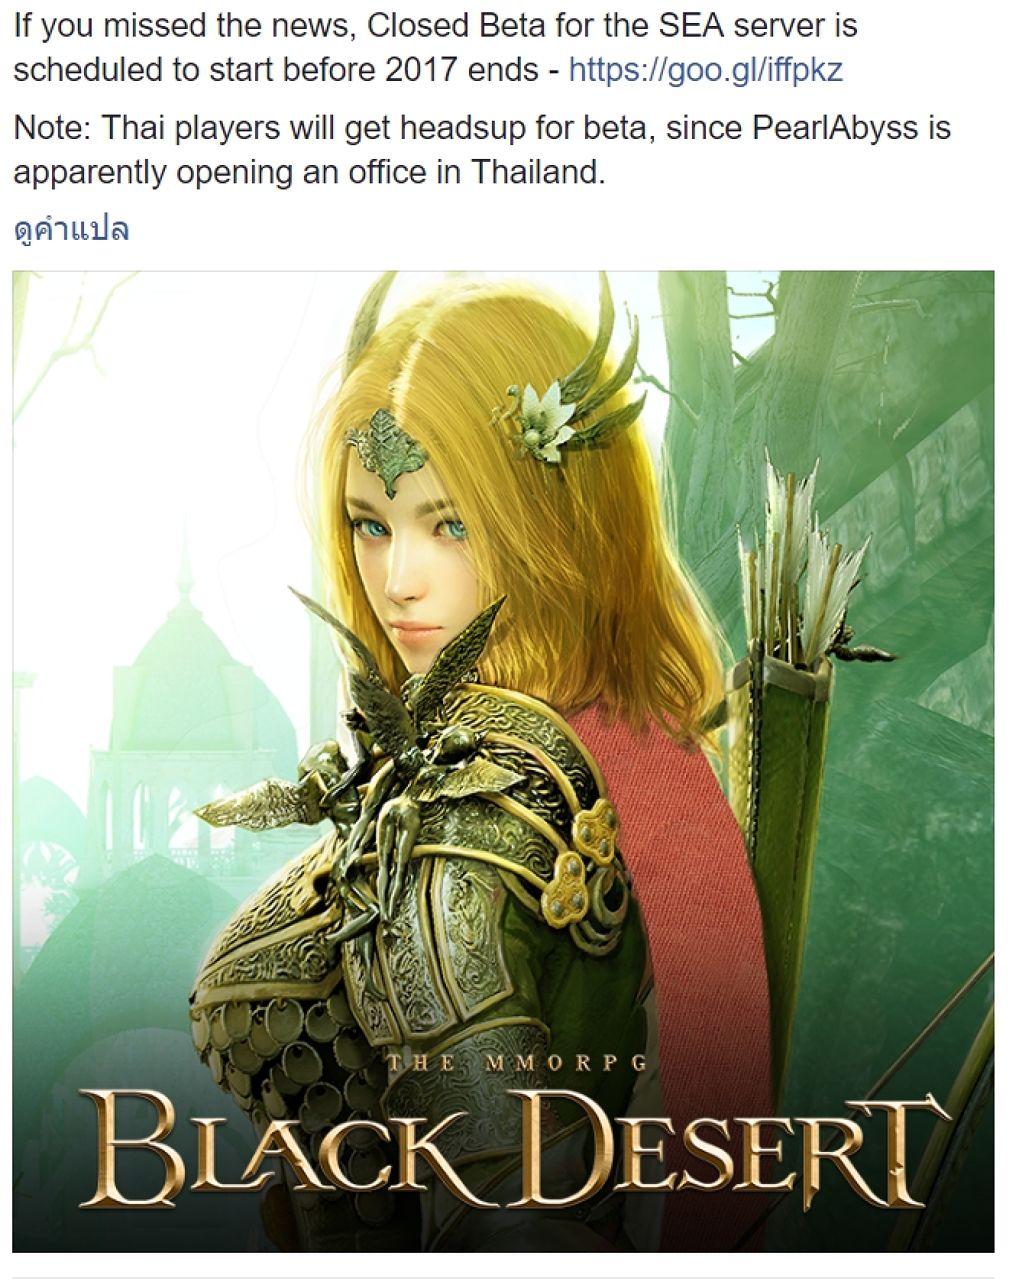 ลือแรง!!! Pearl Abyss เตรียมเปิดบ้านหลังใหม่ในไทย พร้อมเตรียมประกาศรับสมัครงานต้อนรับการมาถึงของ Black desert สัญชาติไทย